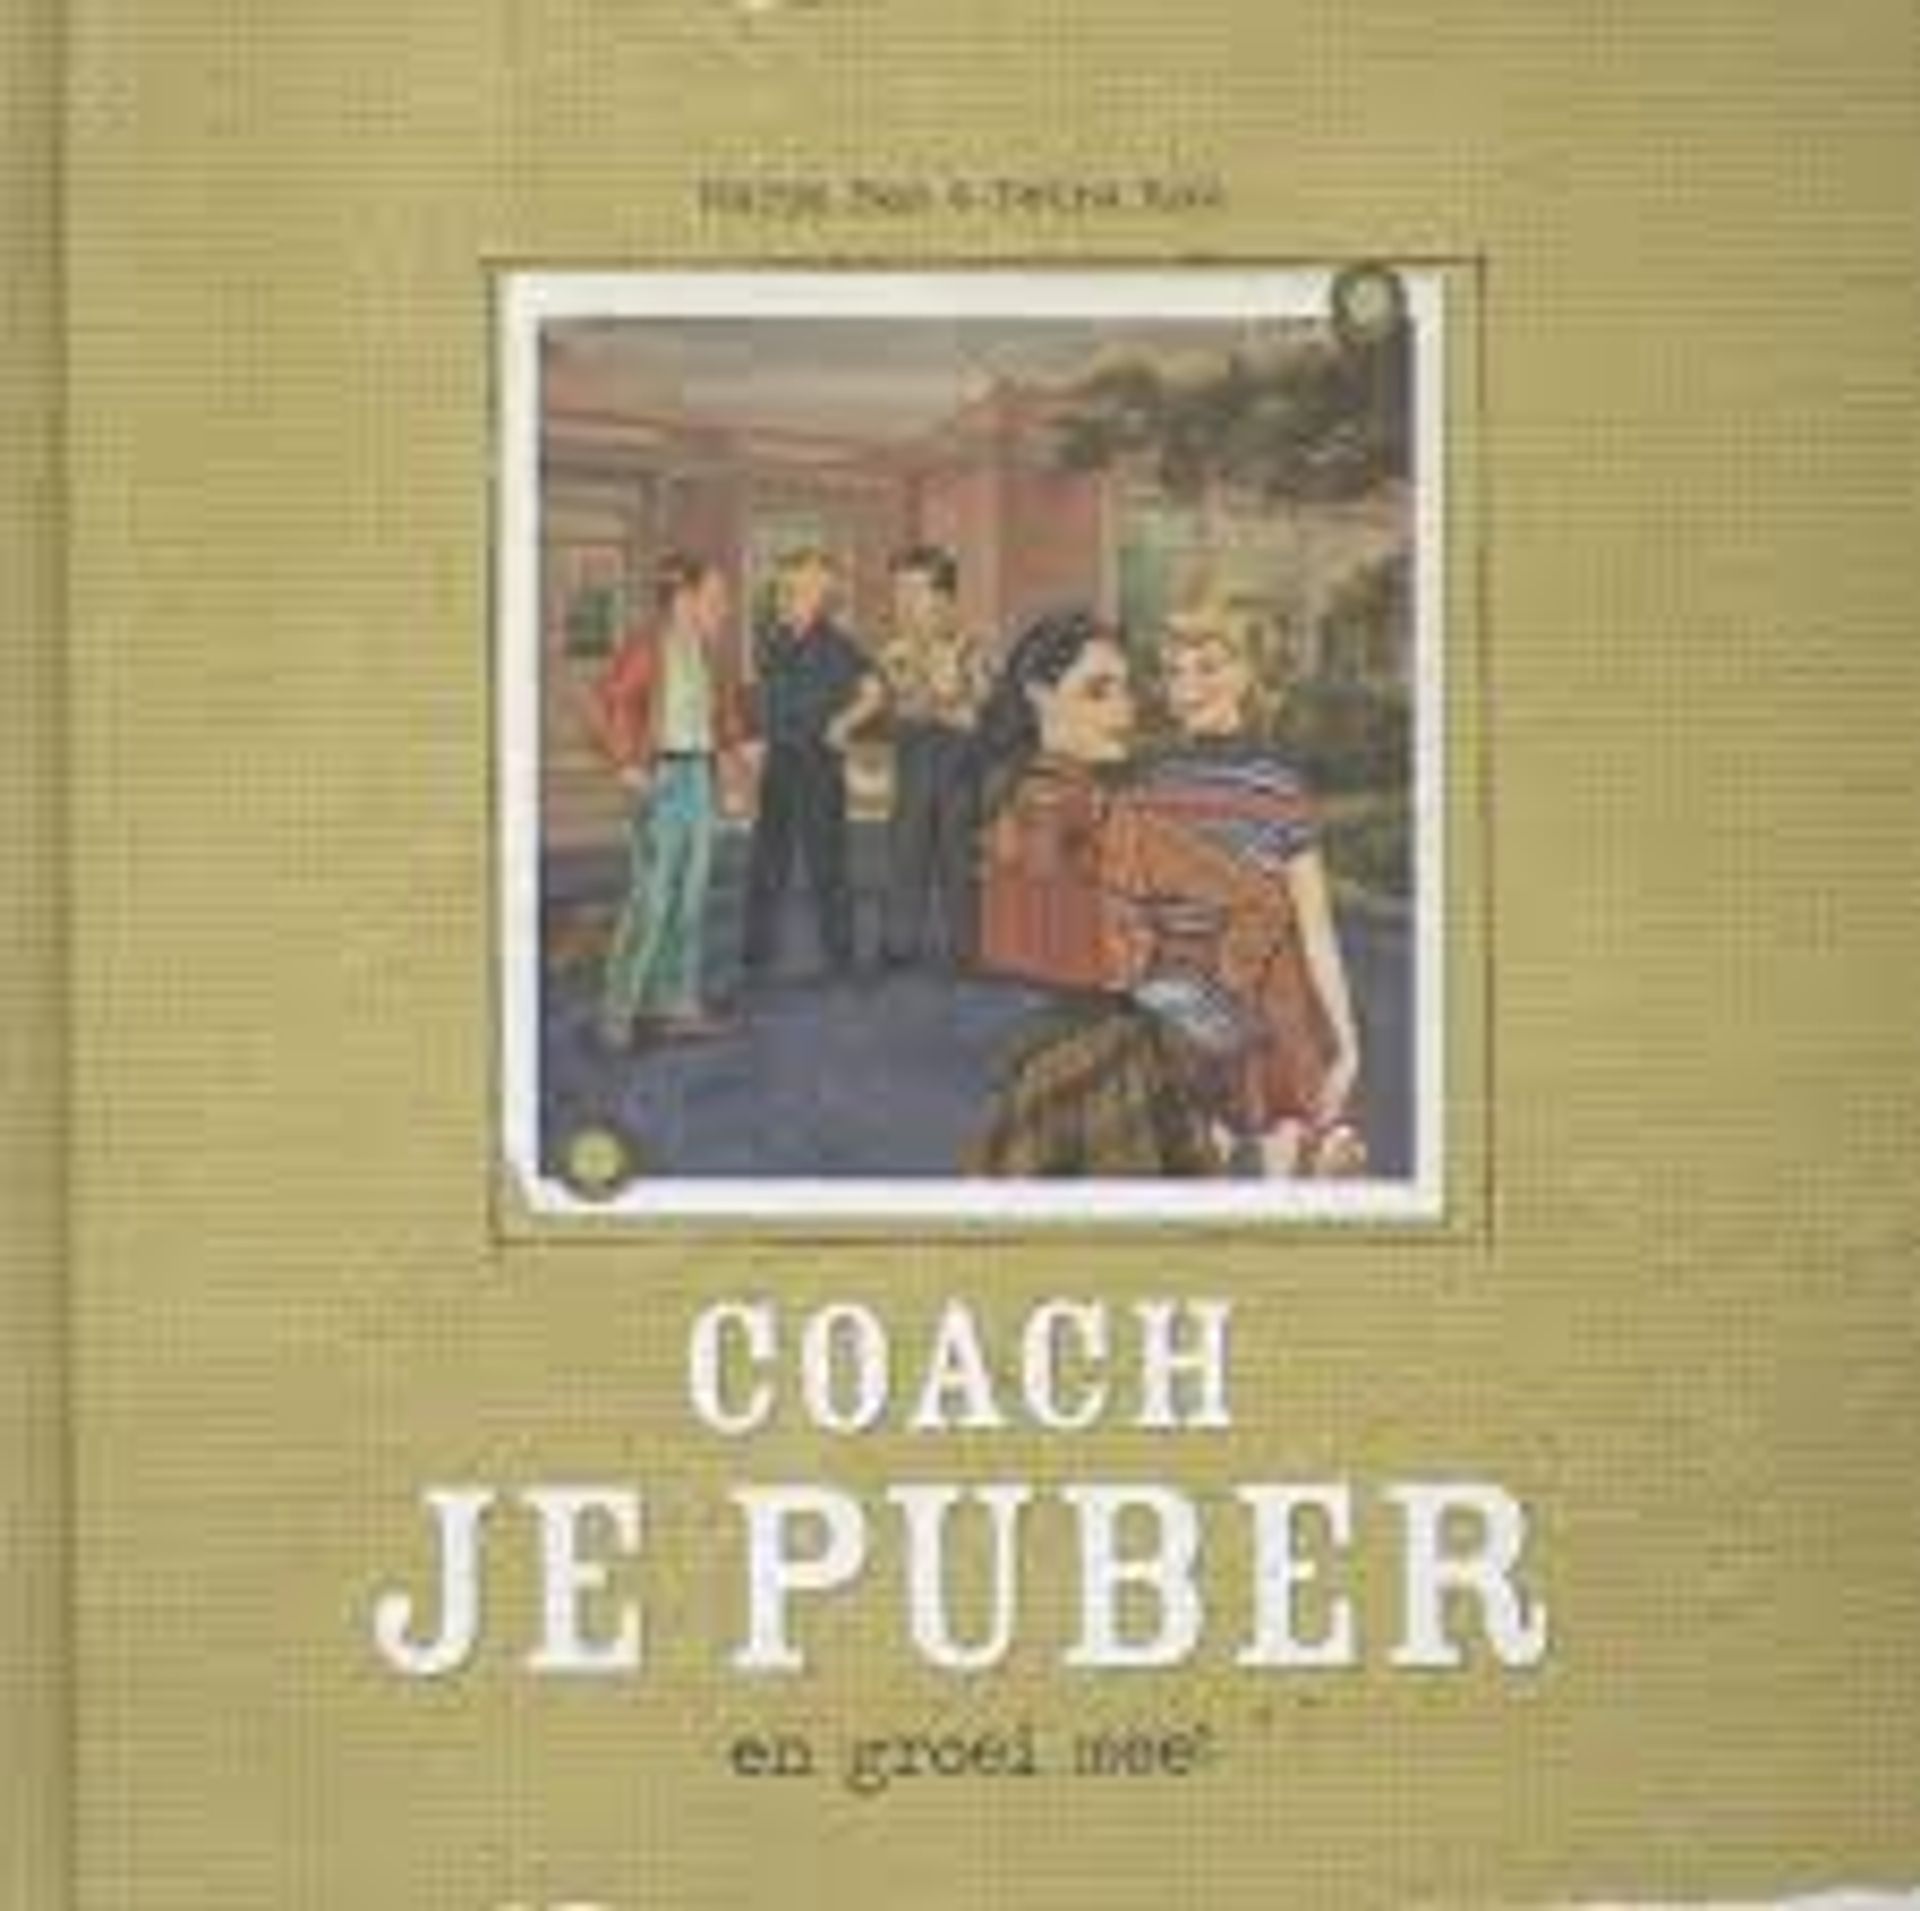 coach_je_puber